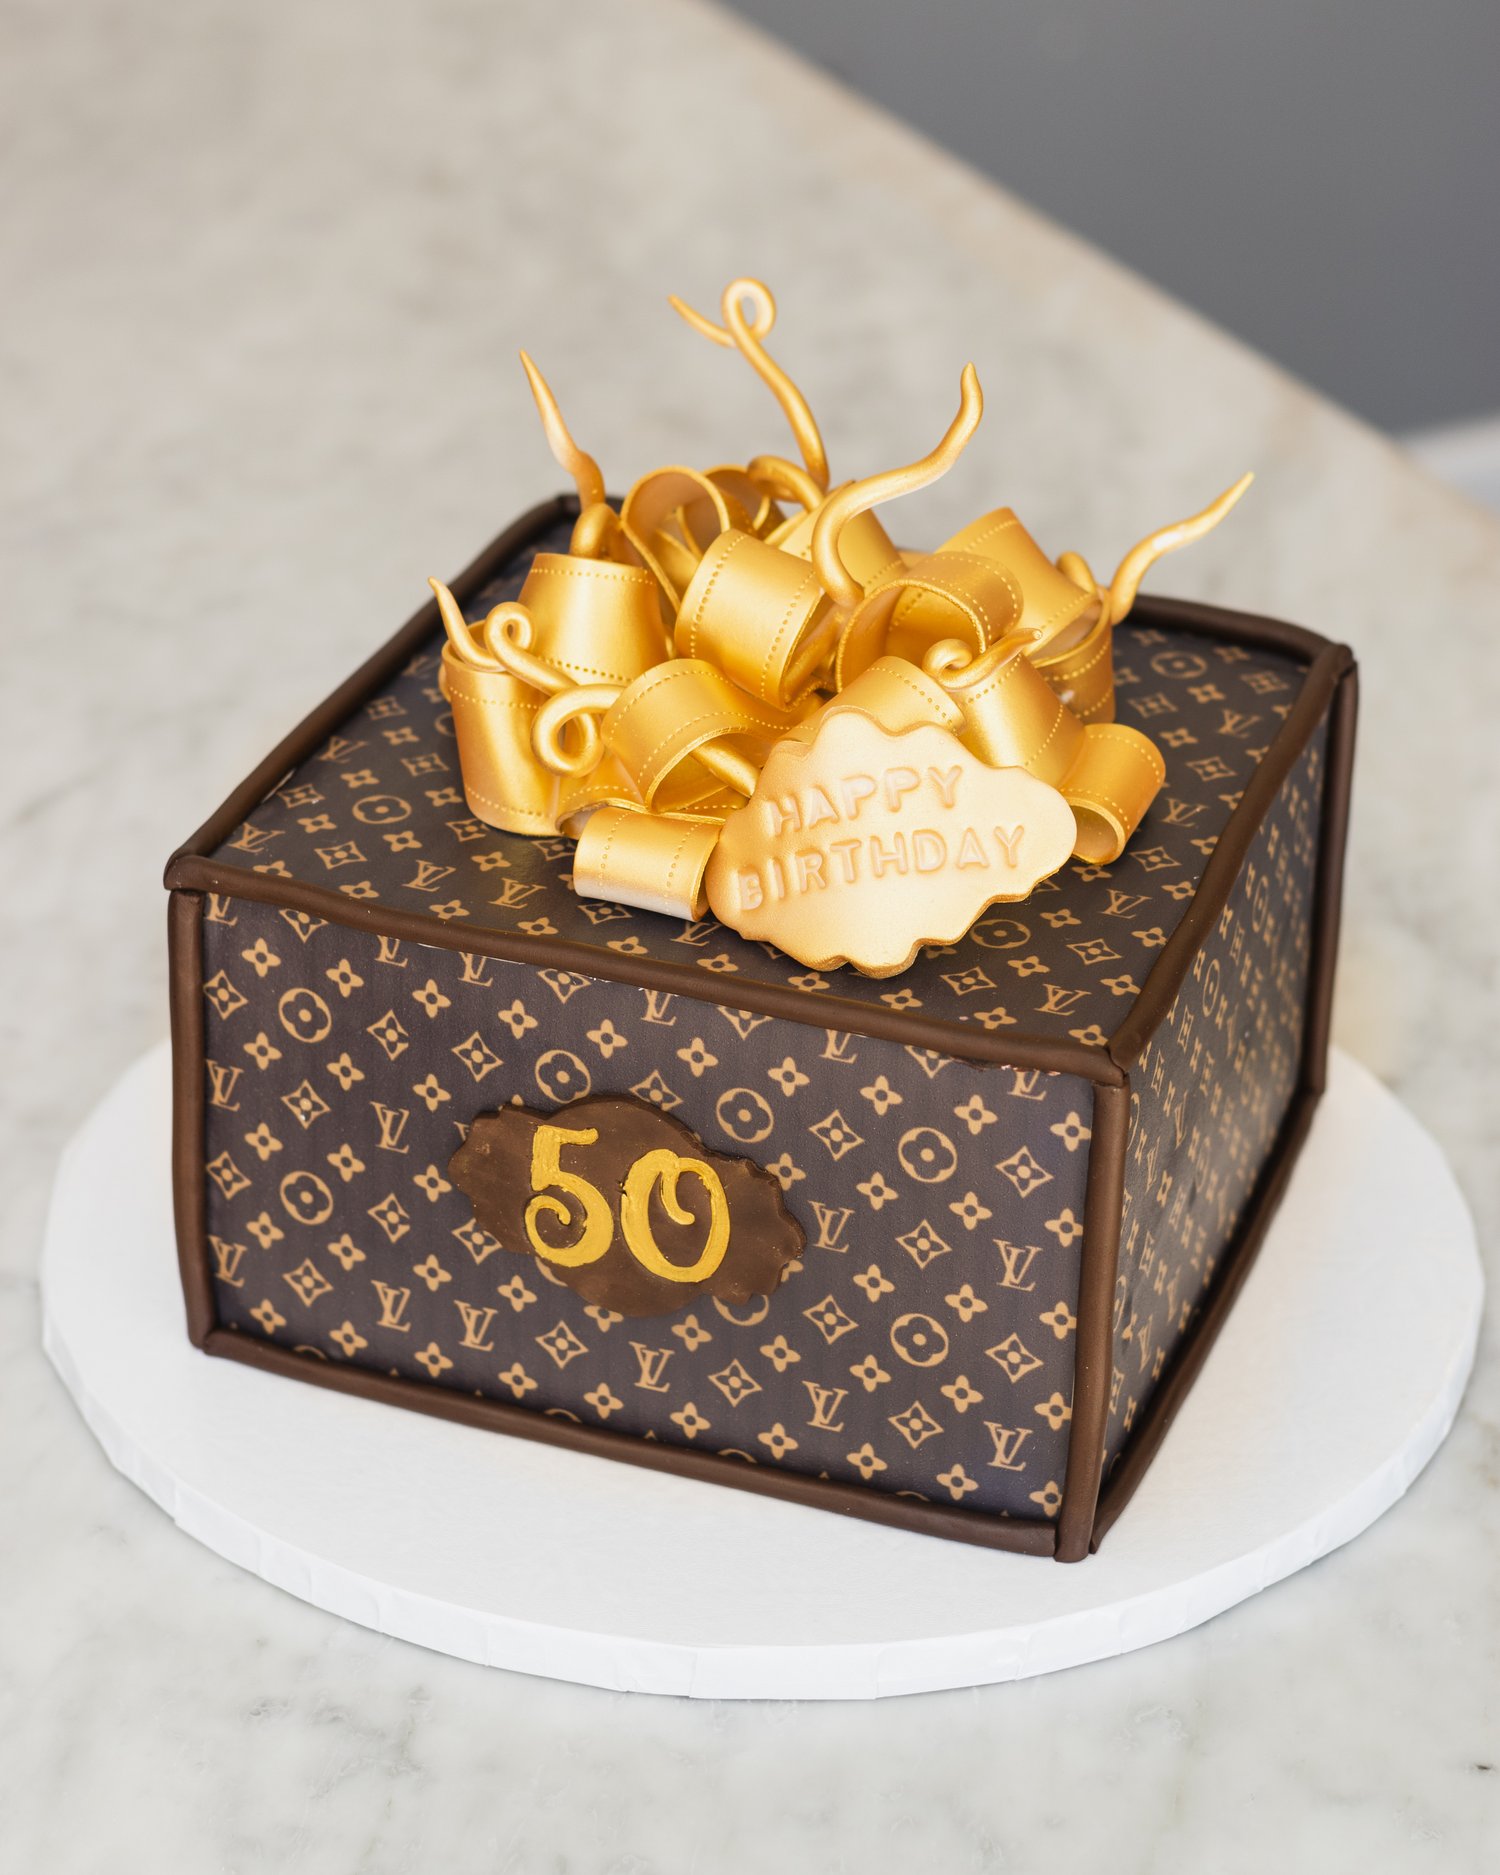 LOUIS VUITTON BIRTHDAY: Celebrate any birthday with a gorgeous set